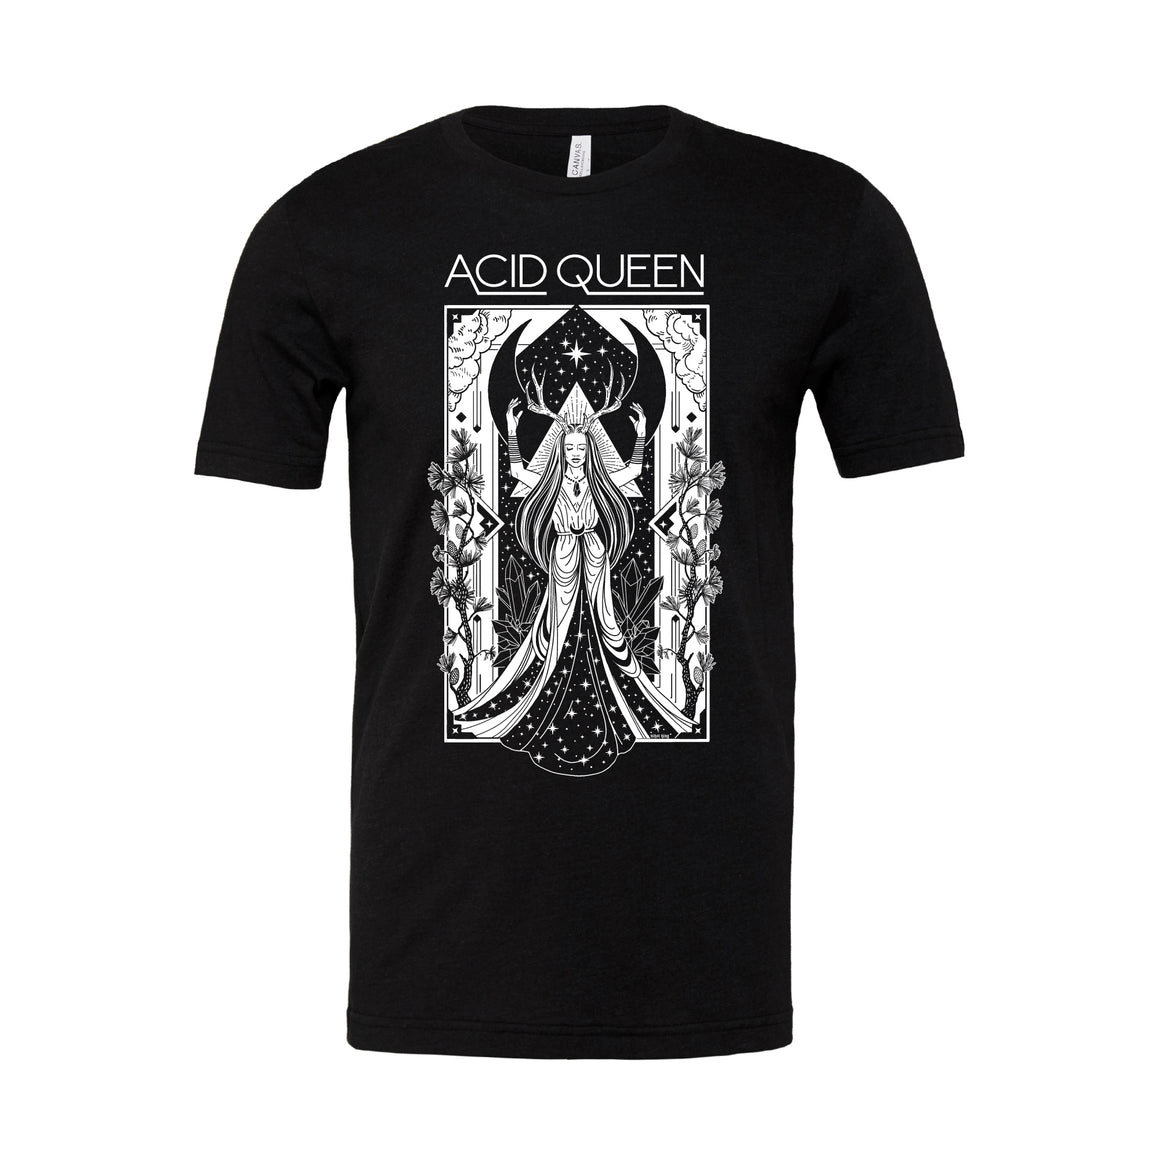 "The Acid Queen" T-Shirt